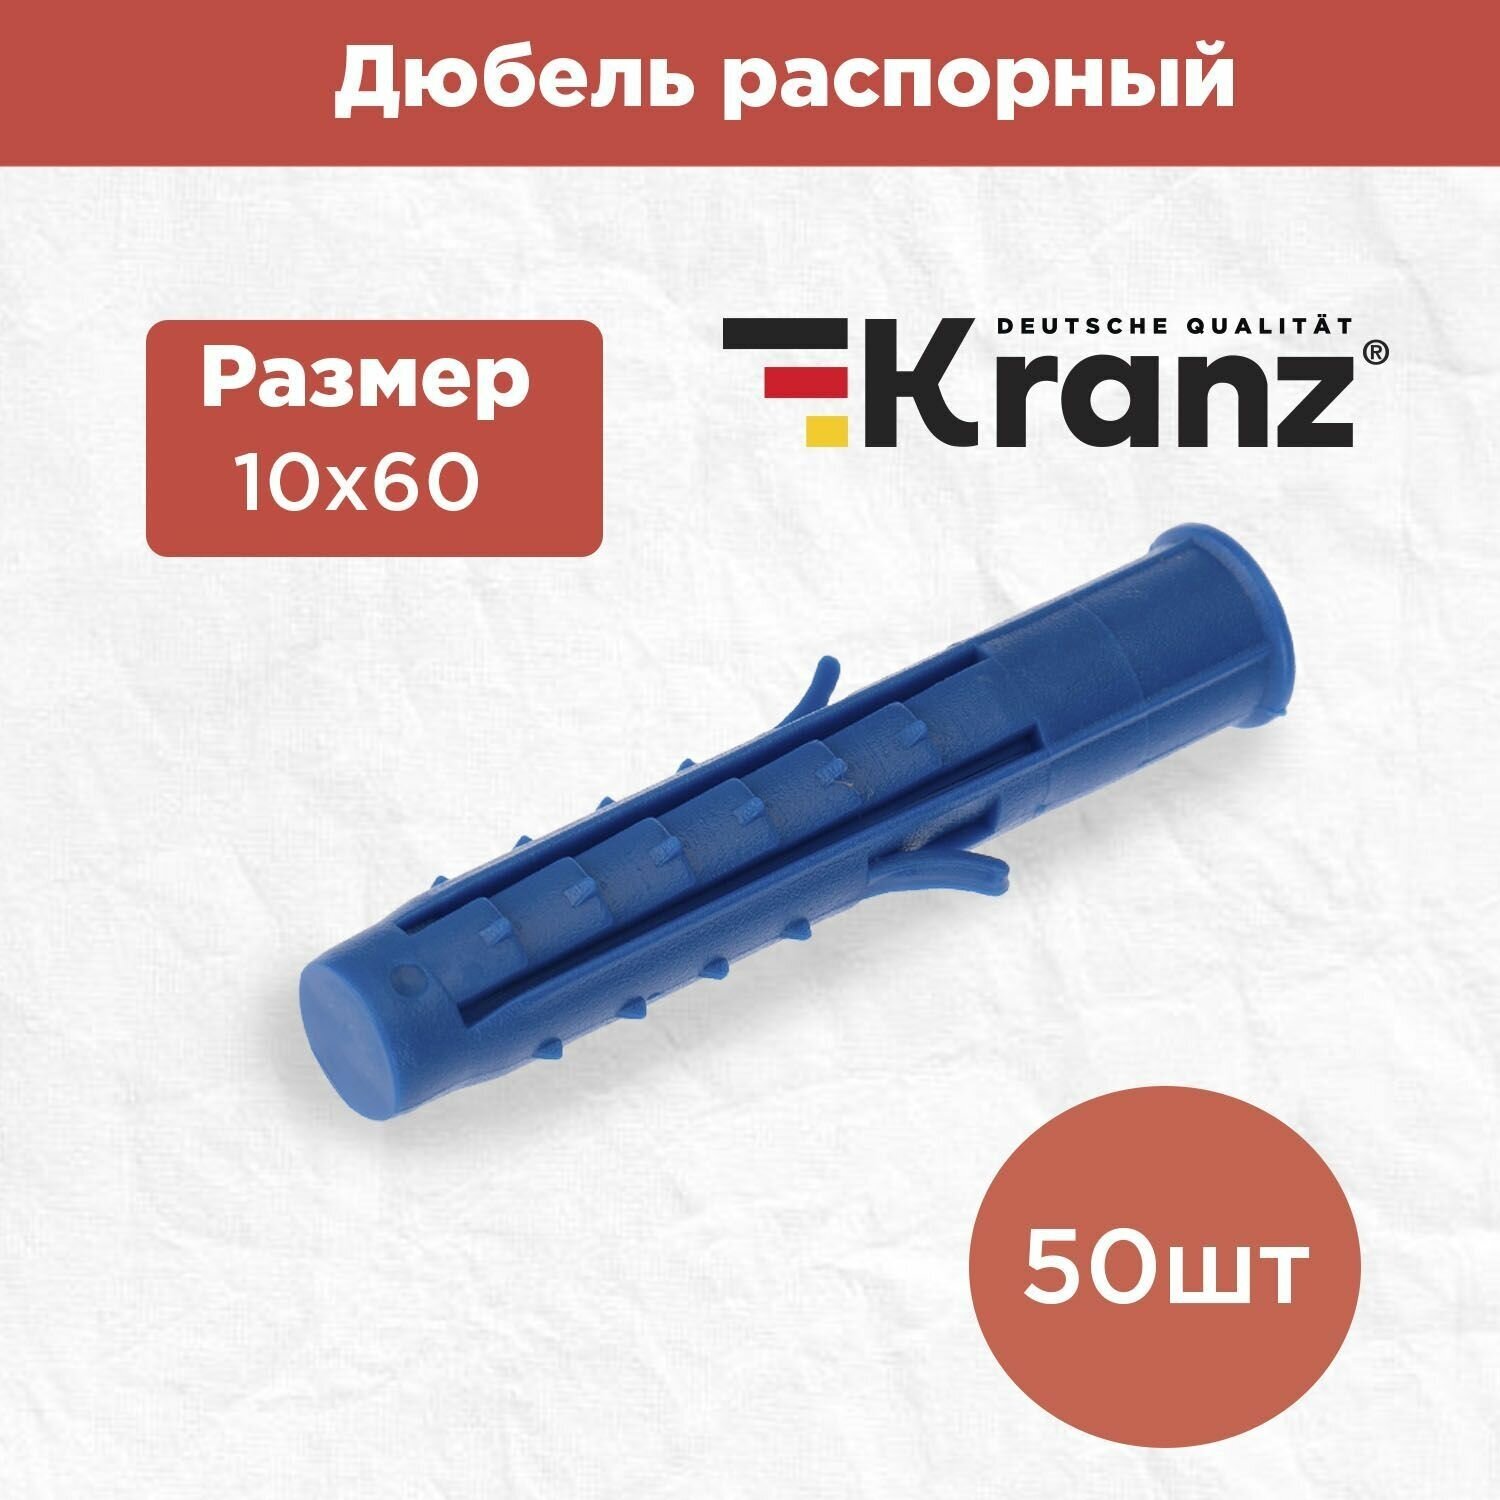 Дюбель распорный KRANZ высокопрочный 10х60, синий, 50 штук в упаковке